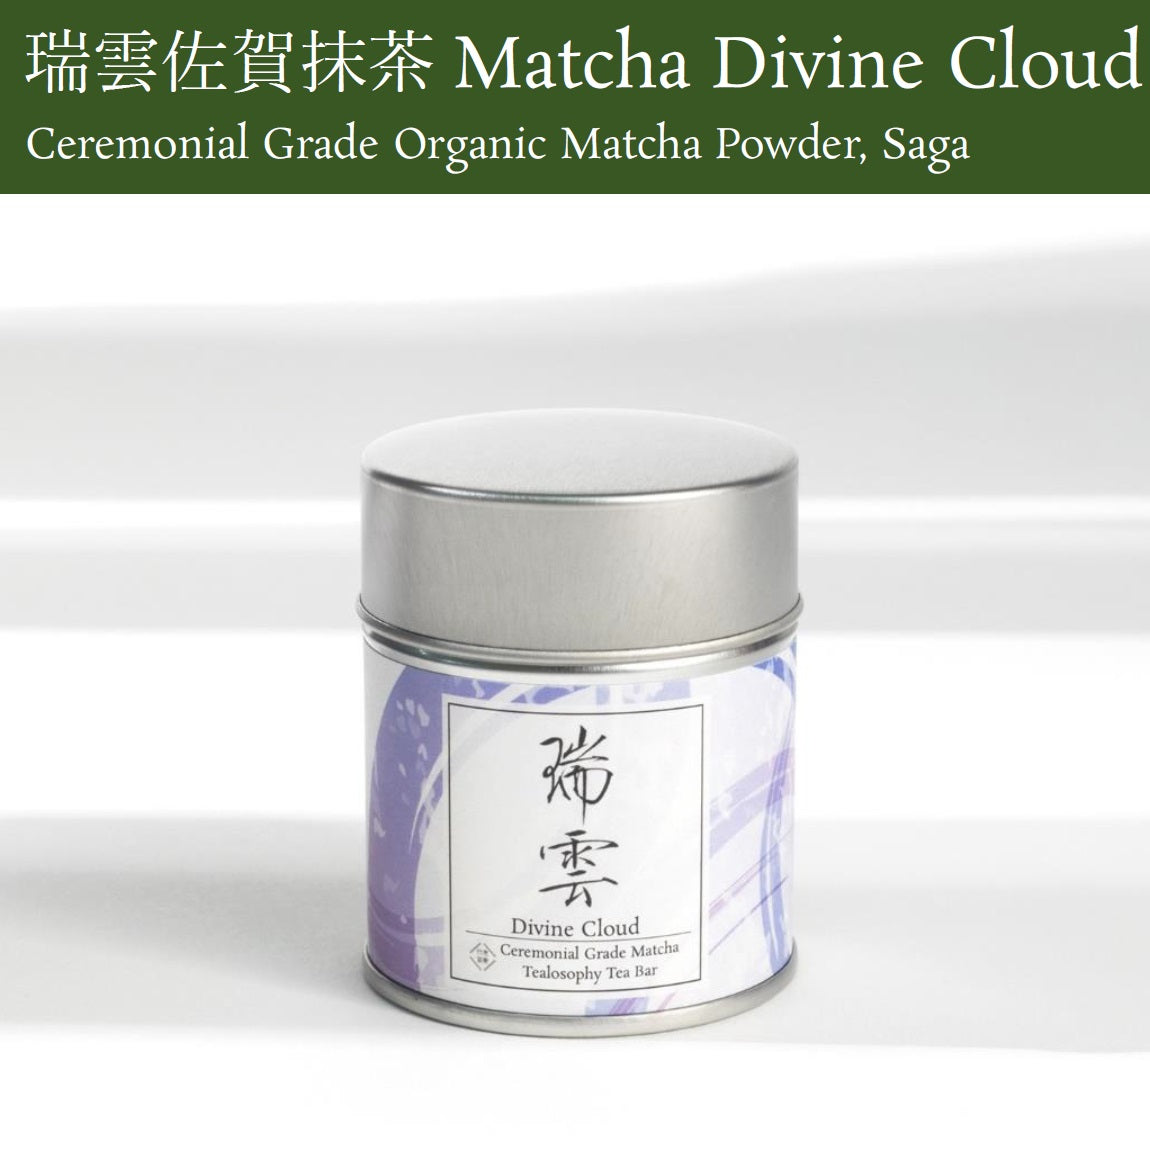 Matcha Divine Cloud